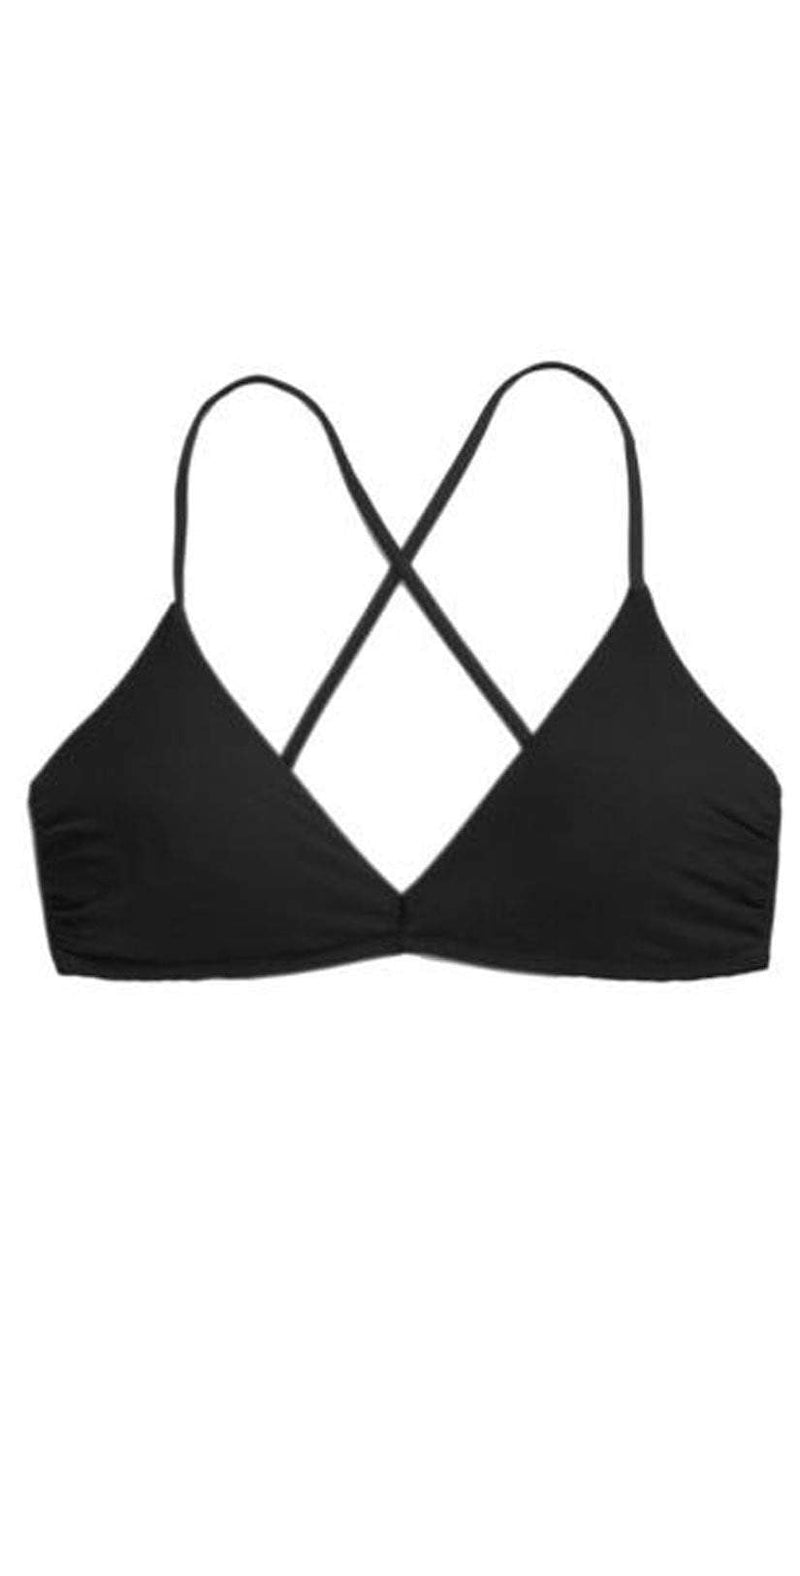 Helen Jon Lace Back Bralette Bikini Top In Black HJRE-0141BKS: